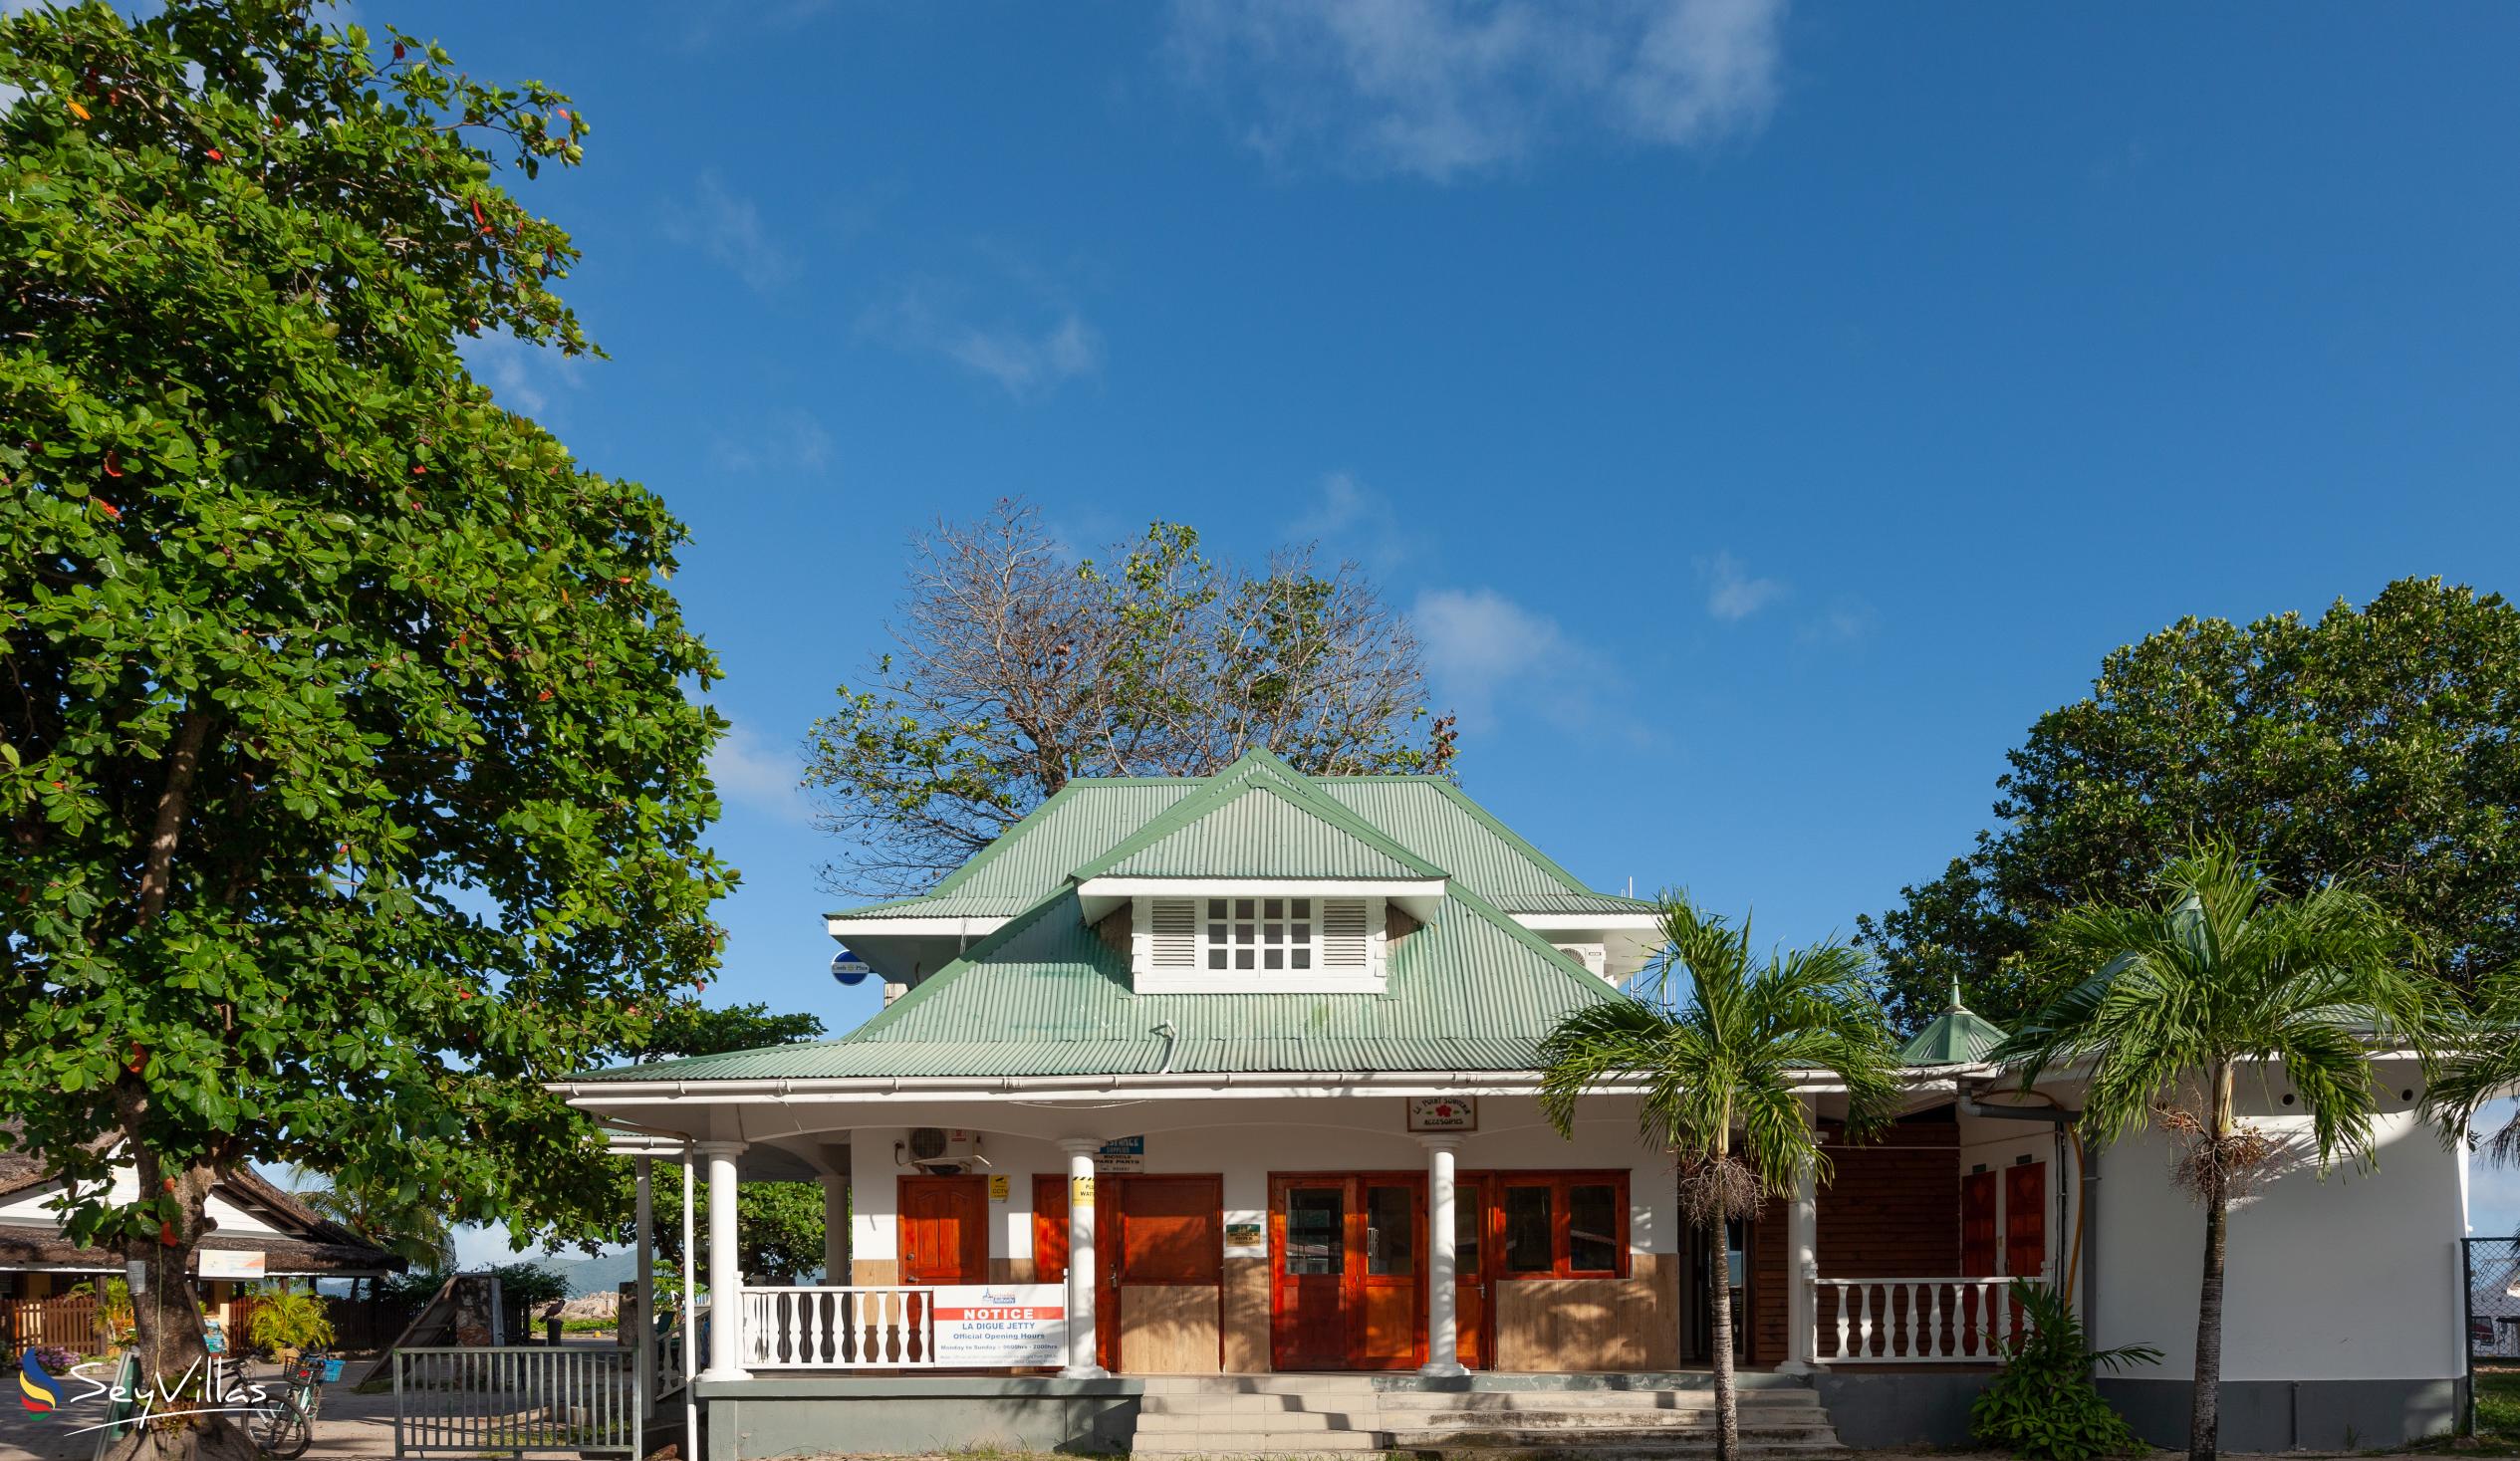 Foto 20: Casa Livingston - Posizione - La Digue (Seychelles)